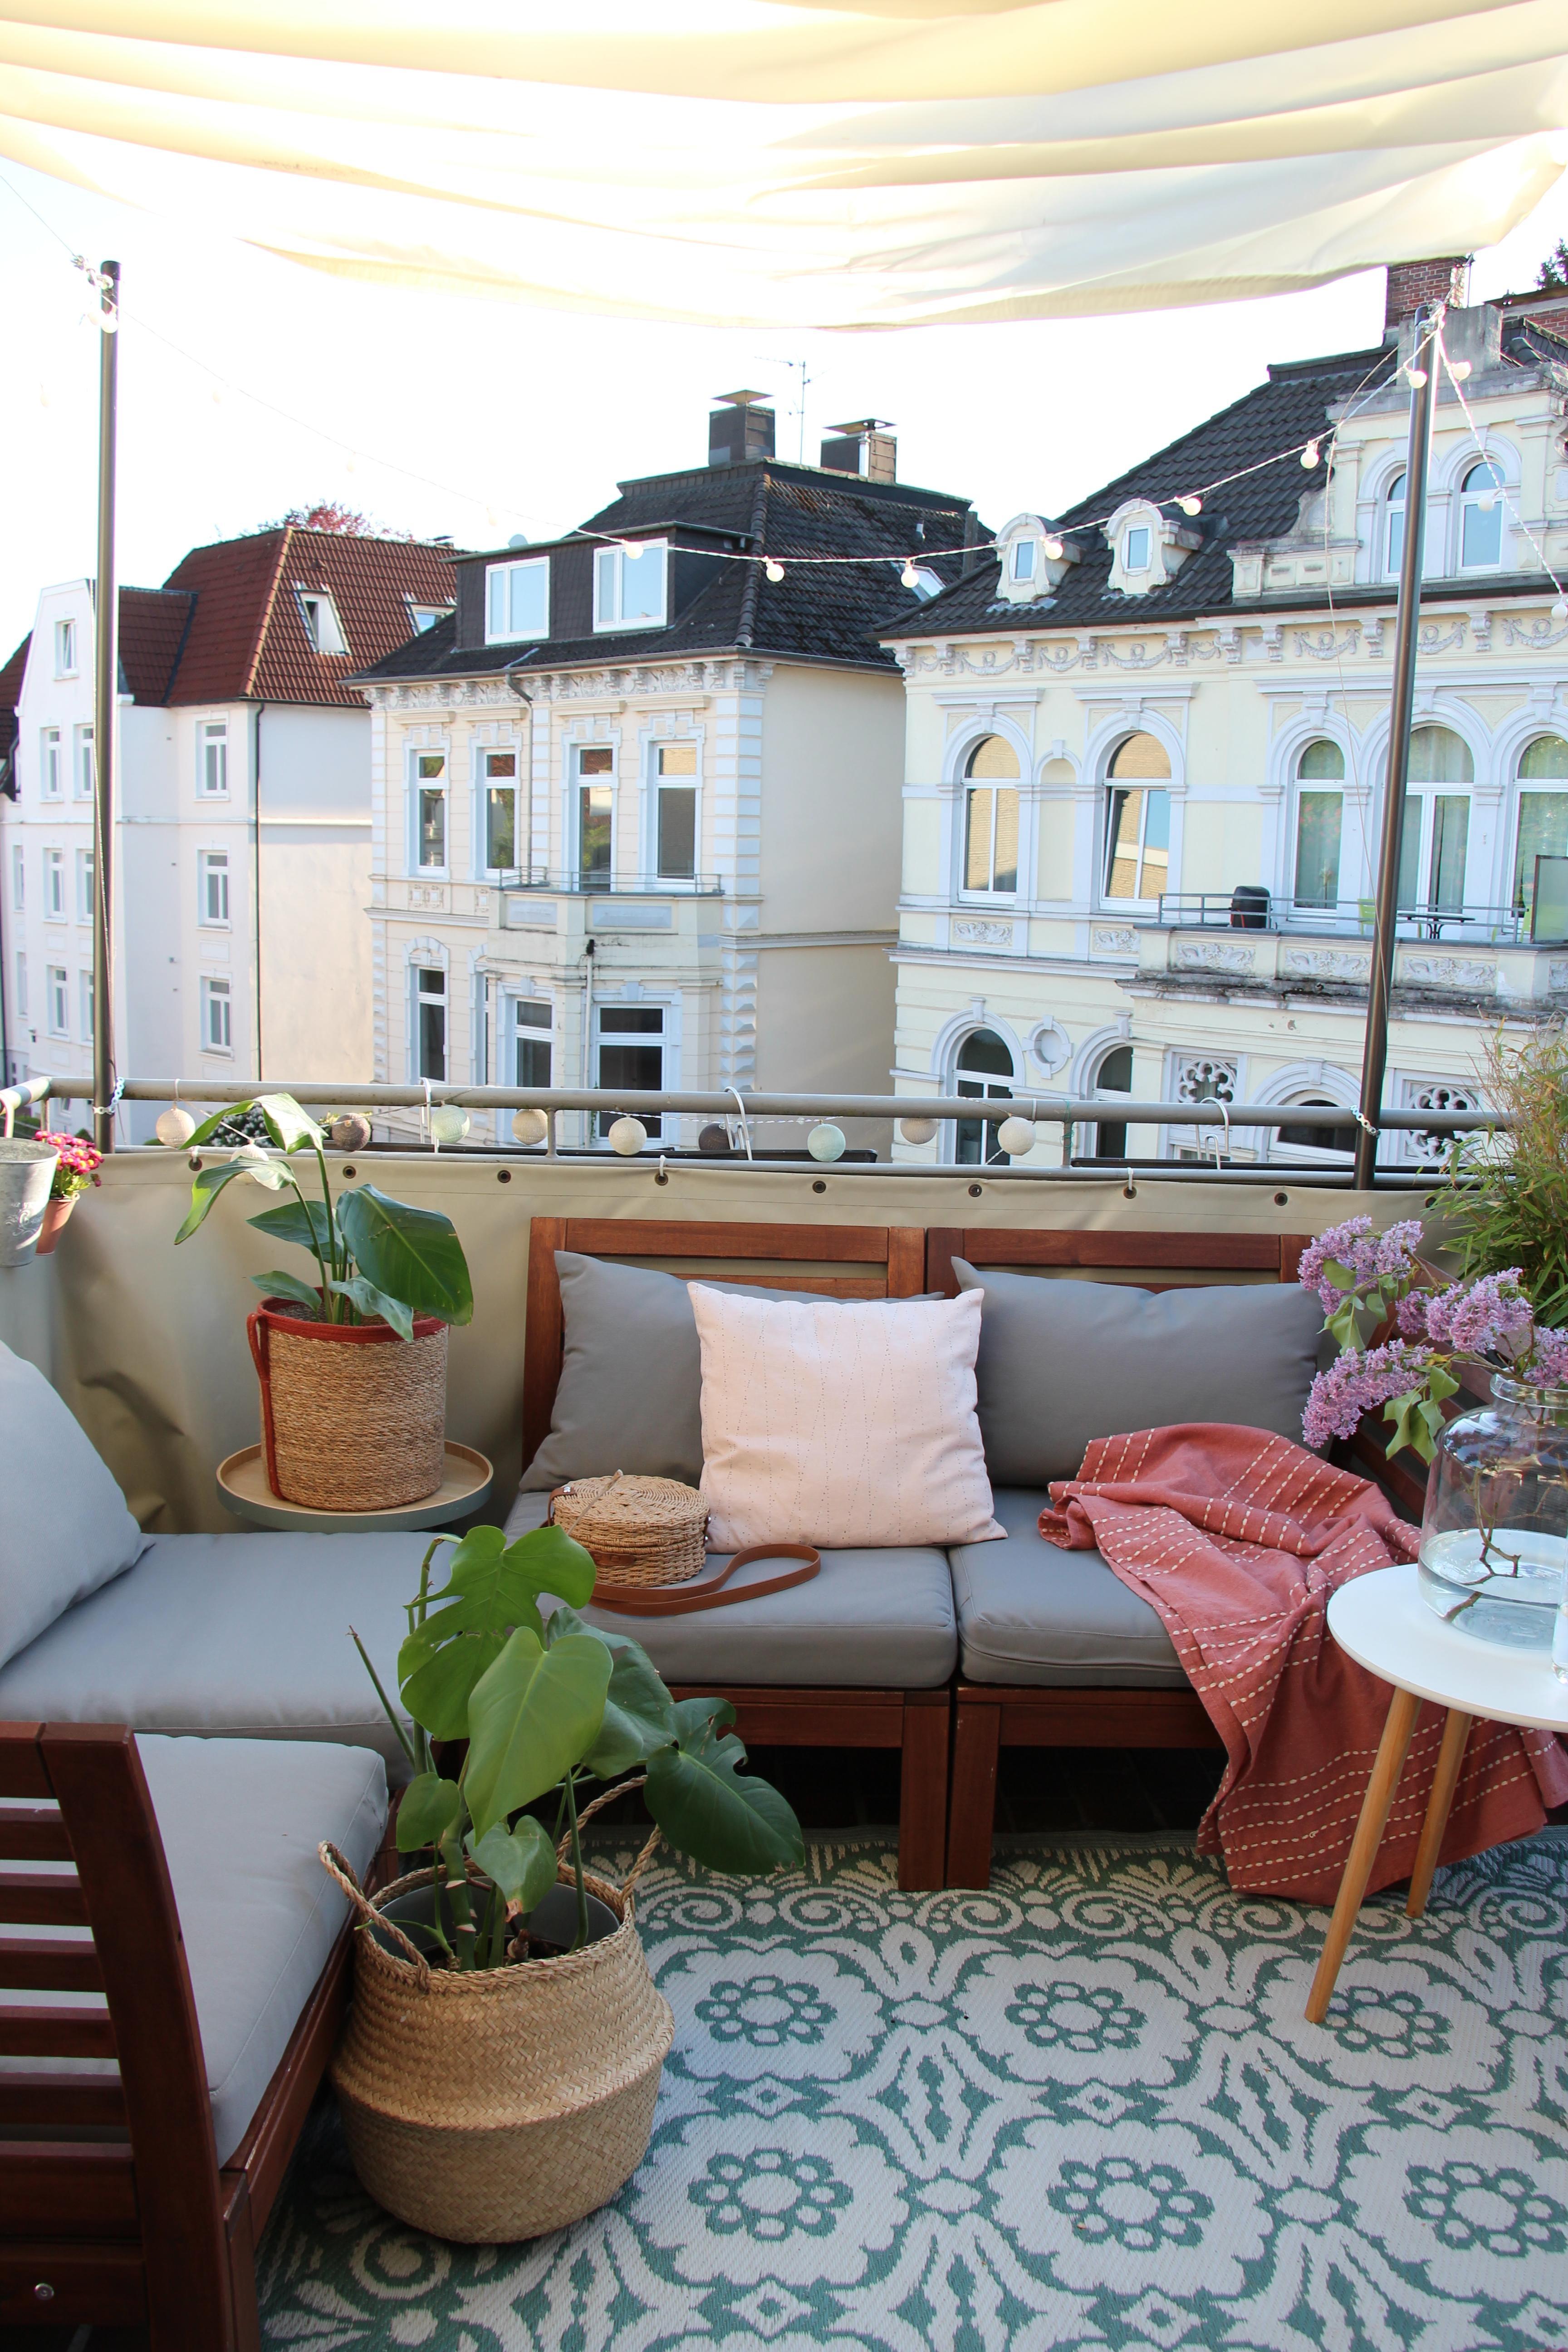 Altbau-Liebe vom Balkon aus #balkon #outdoor #zweitesWohnzimmer #altbau #altbauliebe #ikeaäpplarö #äpplarö #urbanjungle 